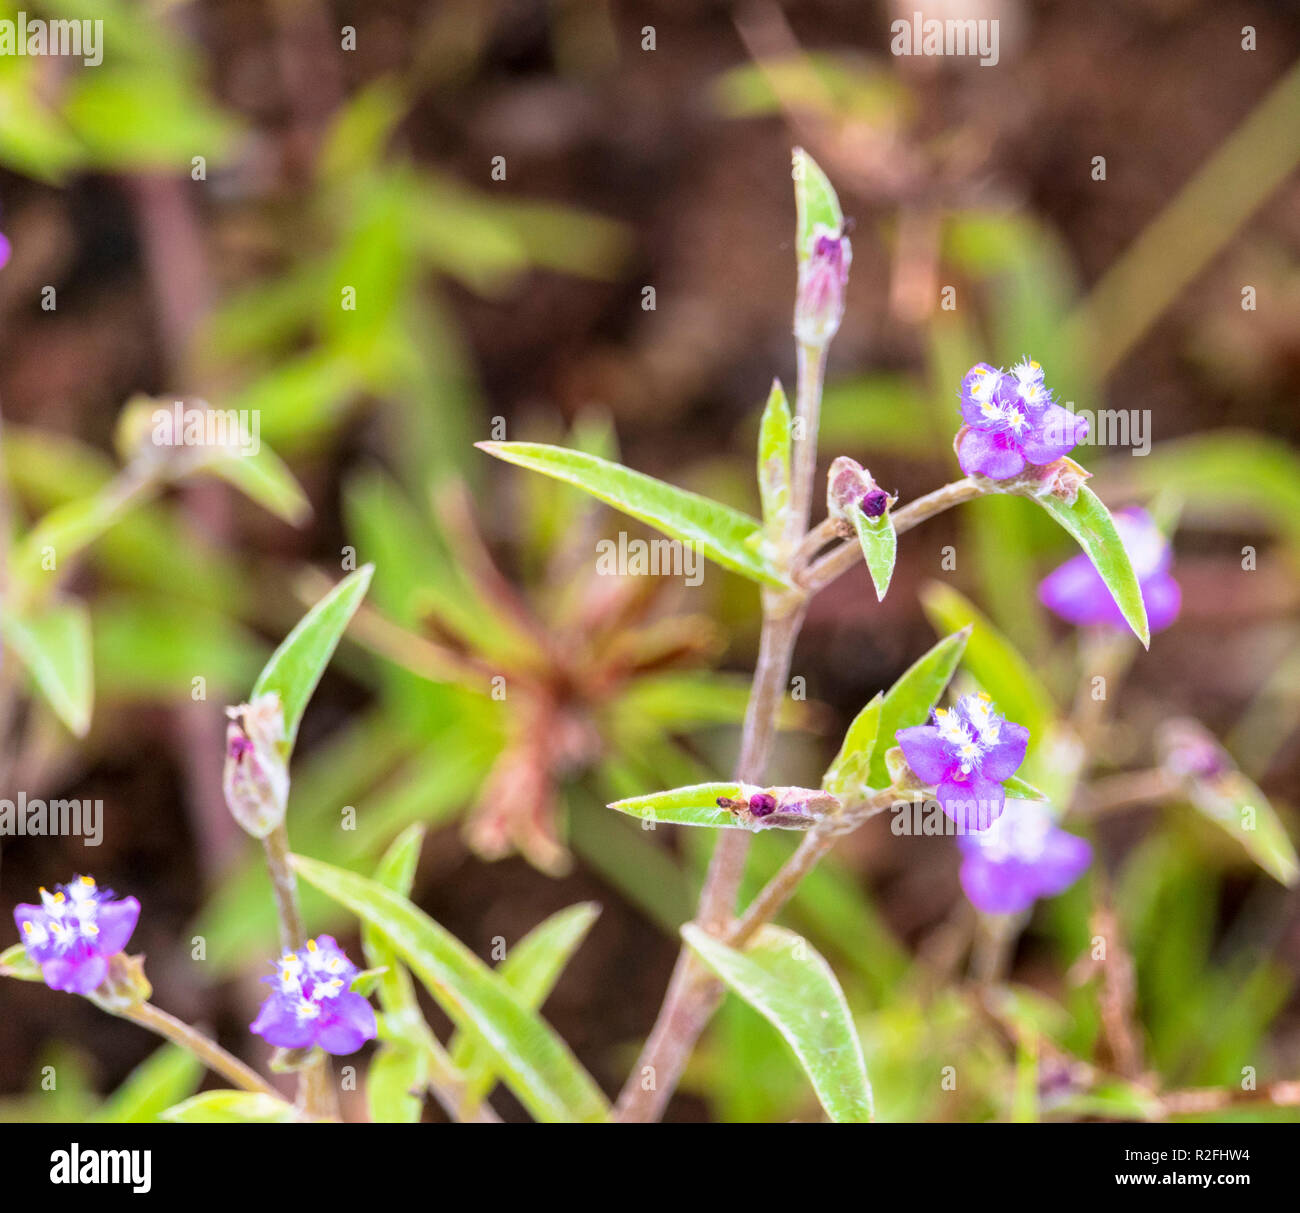 Di piccole dimensioni di colore viola fiore in una pianta Foto Stock